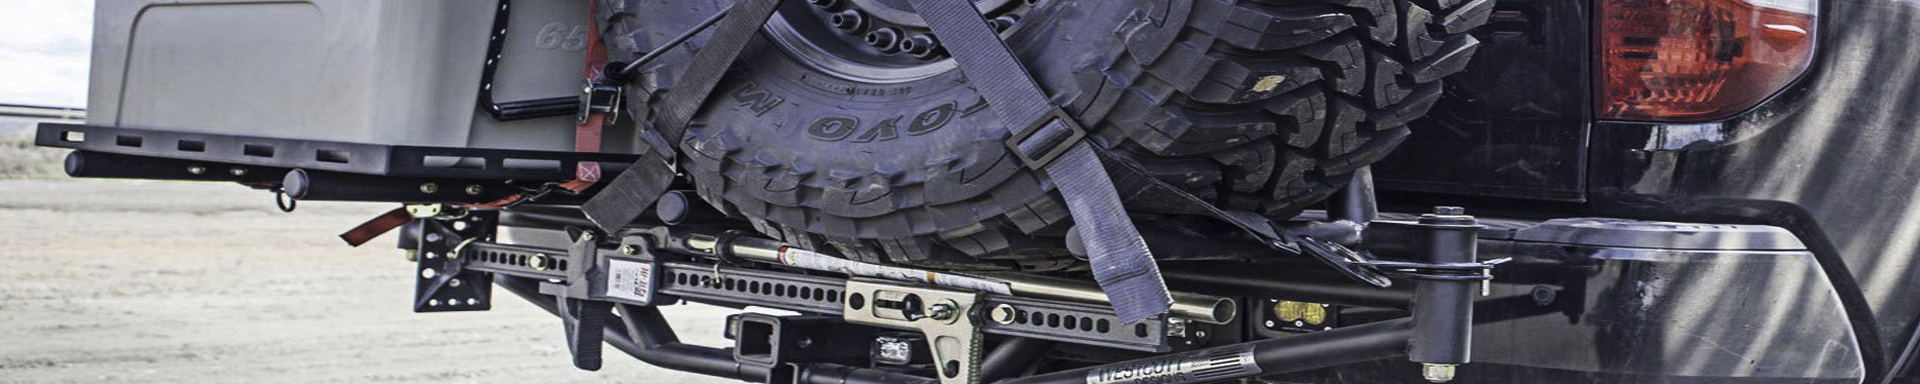 Spare Tire Carrier Accessories | GarageAndFab.com | Munro Industries gf-100103080606